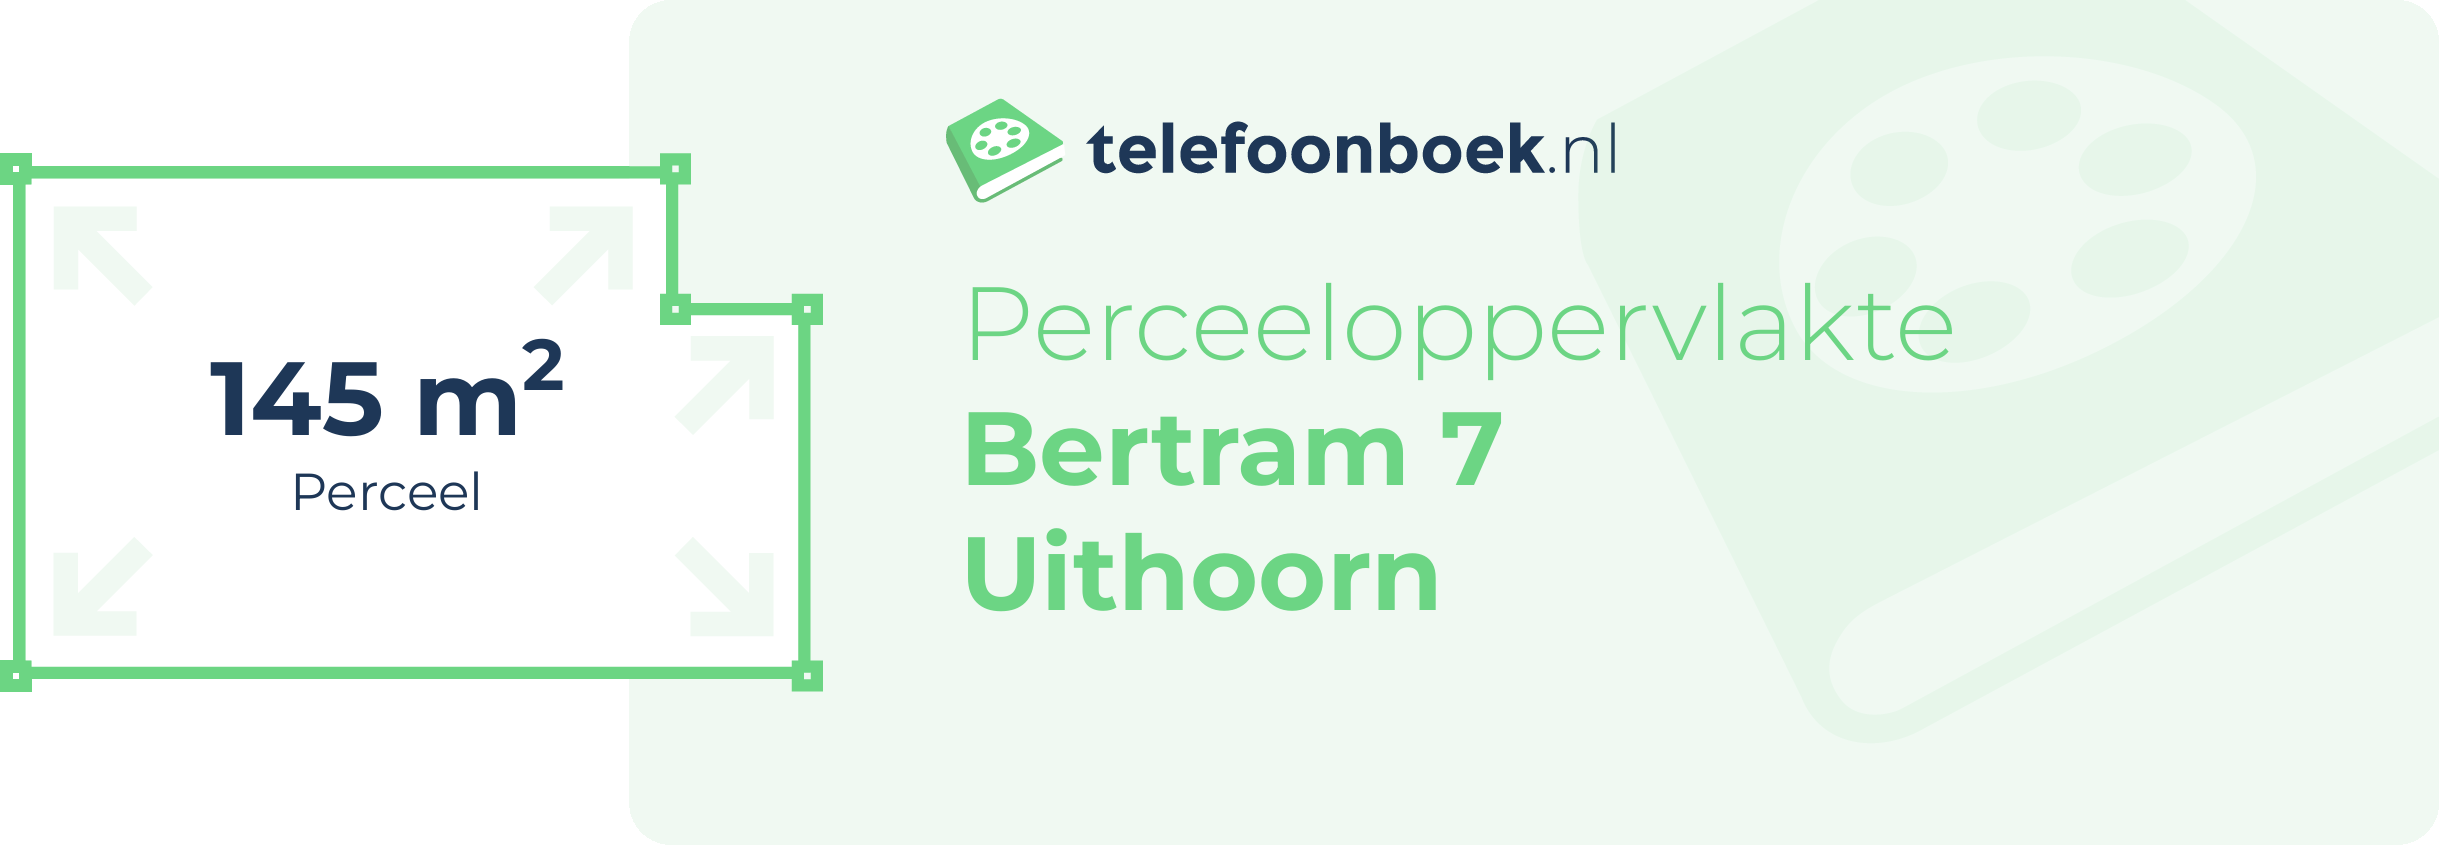 Perceeloppervlakte Bertram 7 Uithoorn